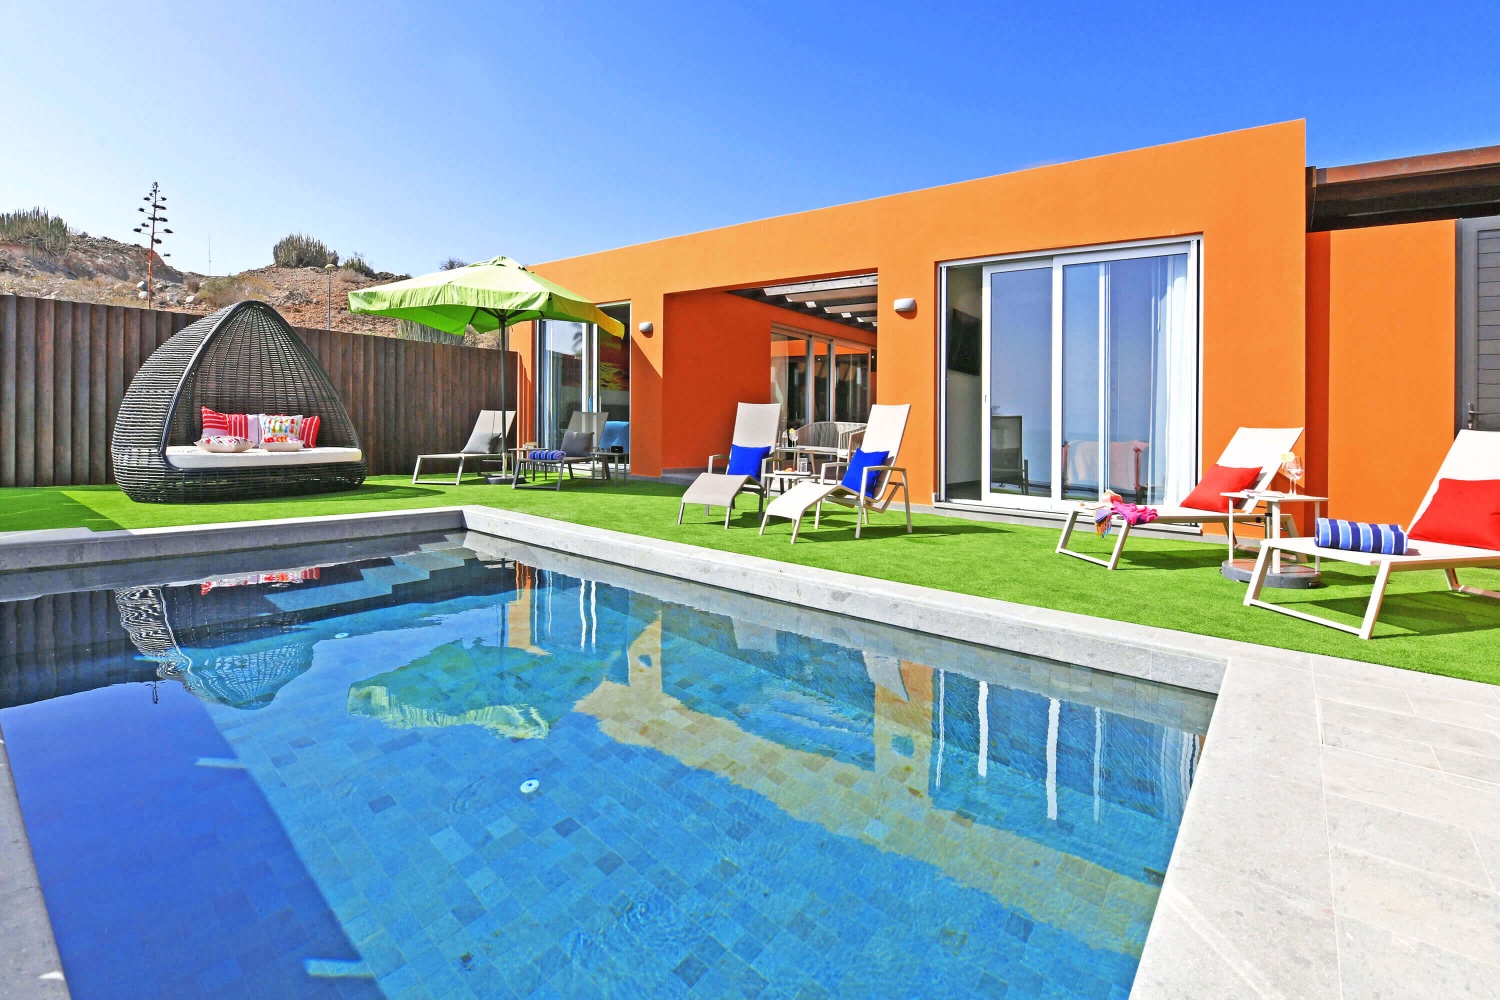 Moderner Luxusbungalow mit allem Komfort, geschmackvoller Innenausstattung und einem gemütlichen Außenbereich mit sonniger Terrasse, privatem Pool- und Meerblick sowie einer Veranda mit Essbereich